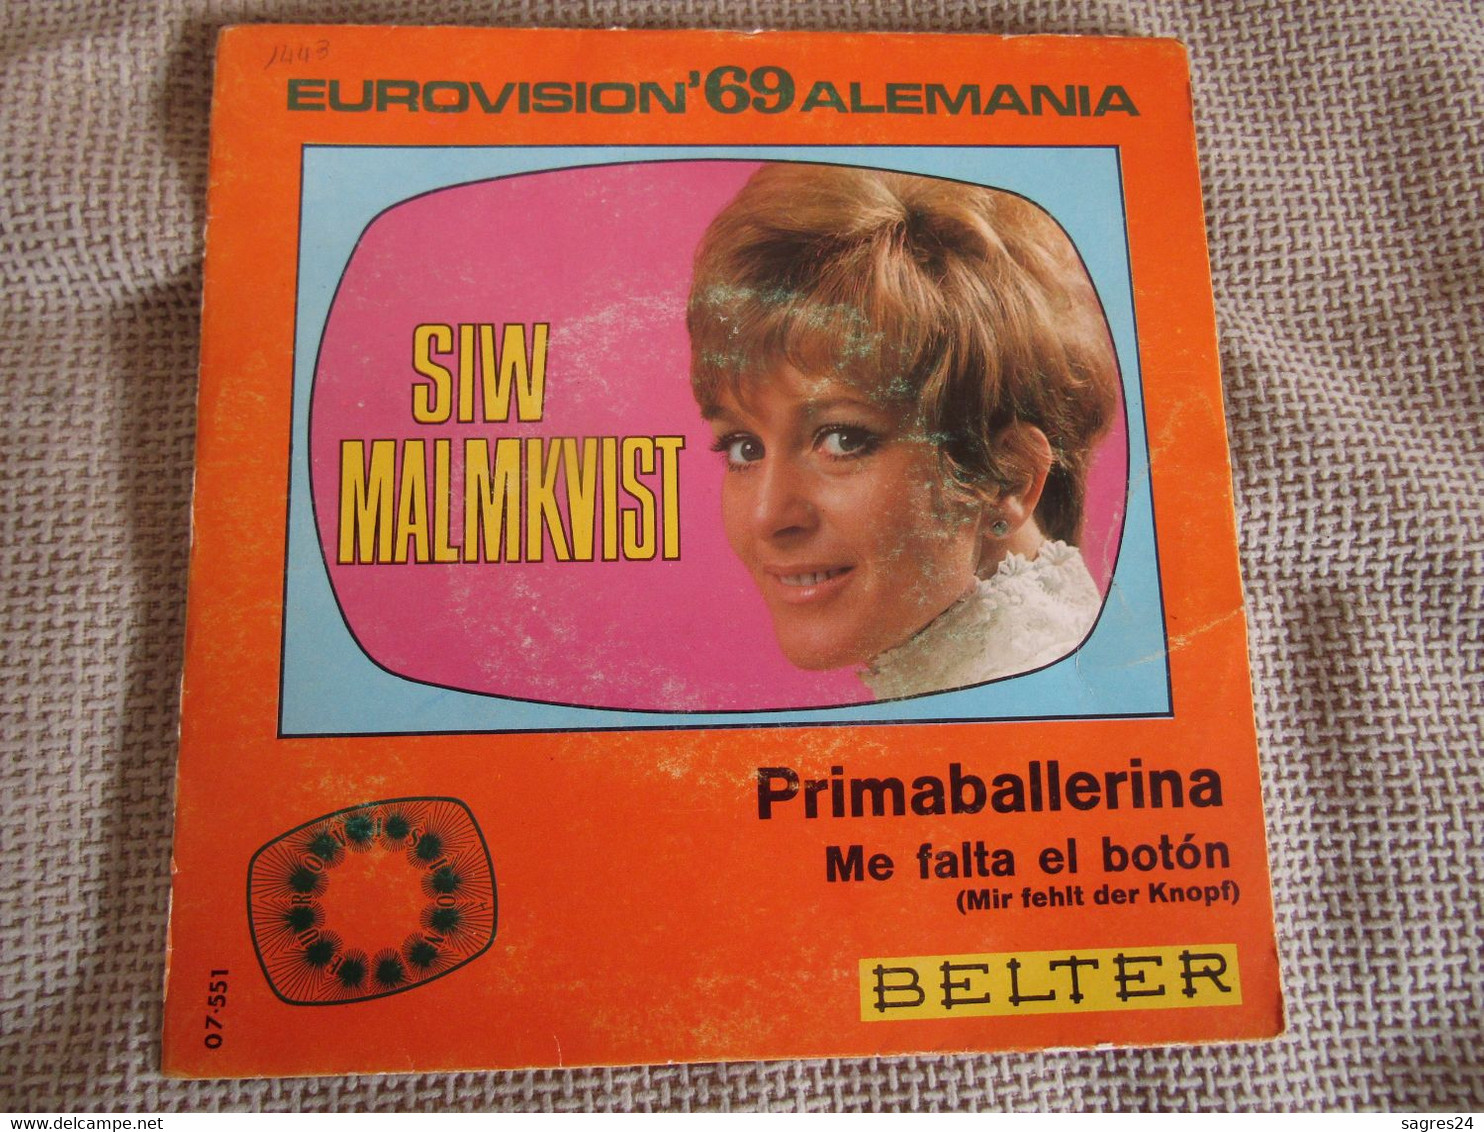 Siw Malmkvist-Primaballerina-Eurovision 69 Alemania - Sonstige - Deutsche Musik